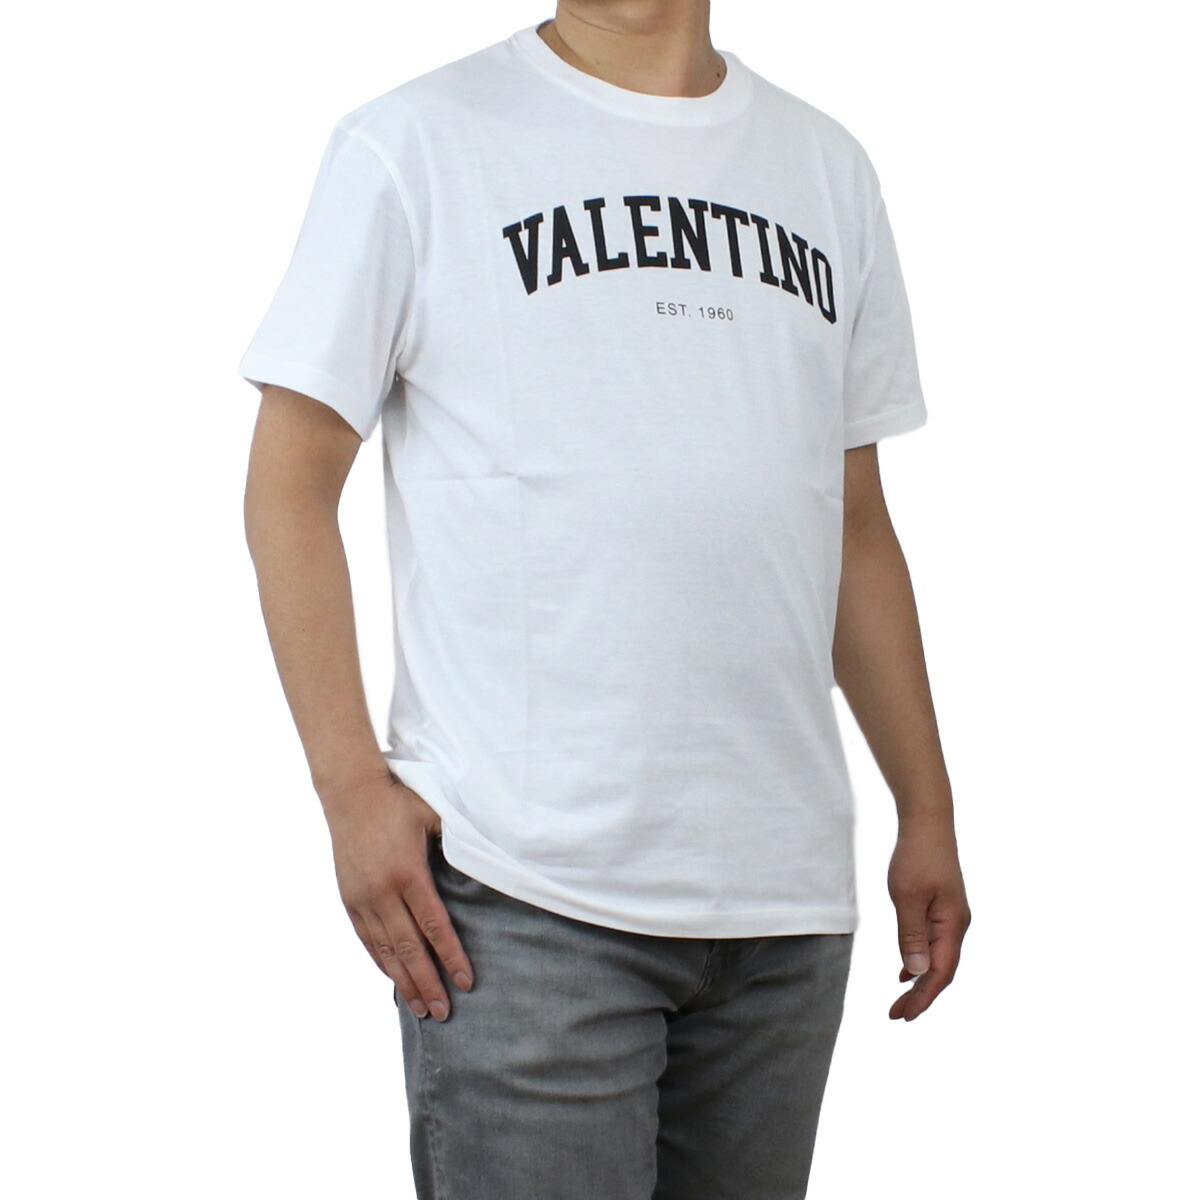 ヴァレンティノ VALENTINO  メンズ－Ｔシャツ 白Tシャツ ブランド 2V3MG13D 964 A01 ホワイト系 ts-01